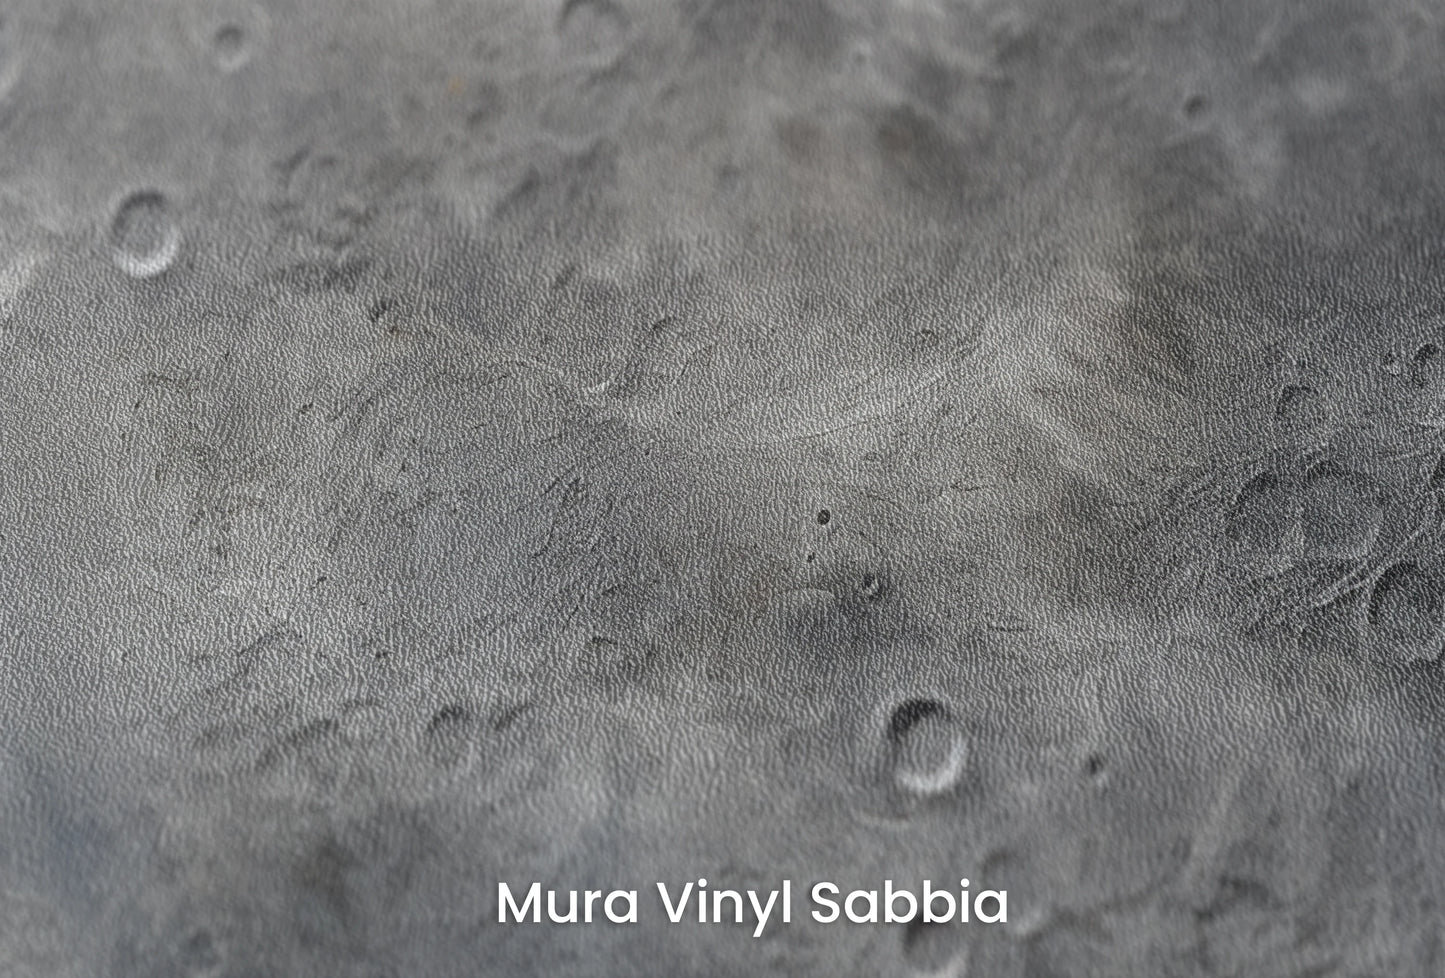 Zbliżenie na artystyczną fototapetę o nazwie Solar Winds na podłożu Mura Vinyl Sabbia struktura grubego ziarna piasku.